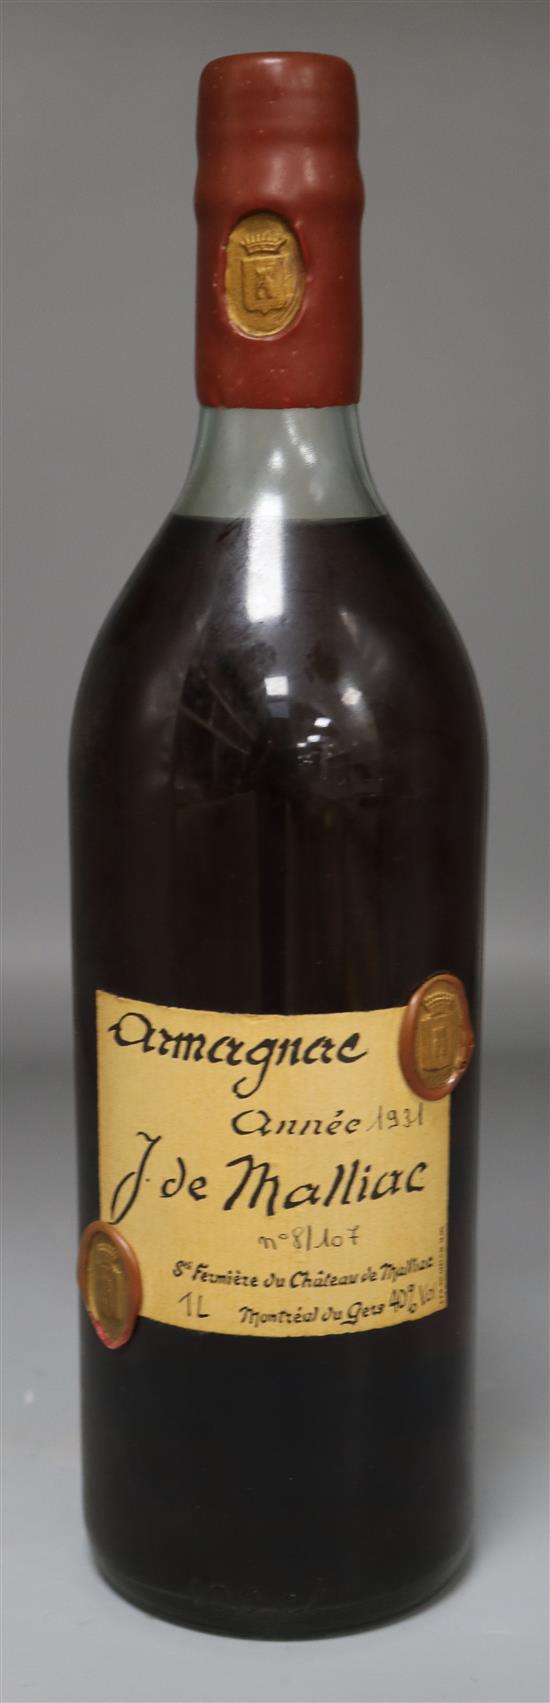 One bottle of J. de Malliac Armagnac, annee 1931,